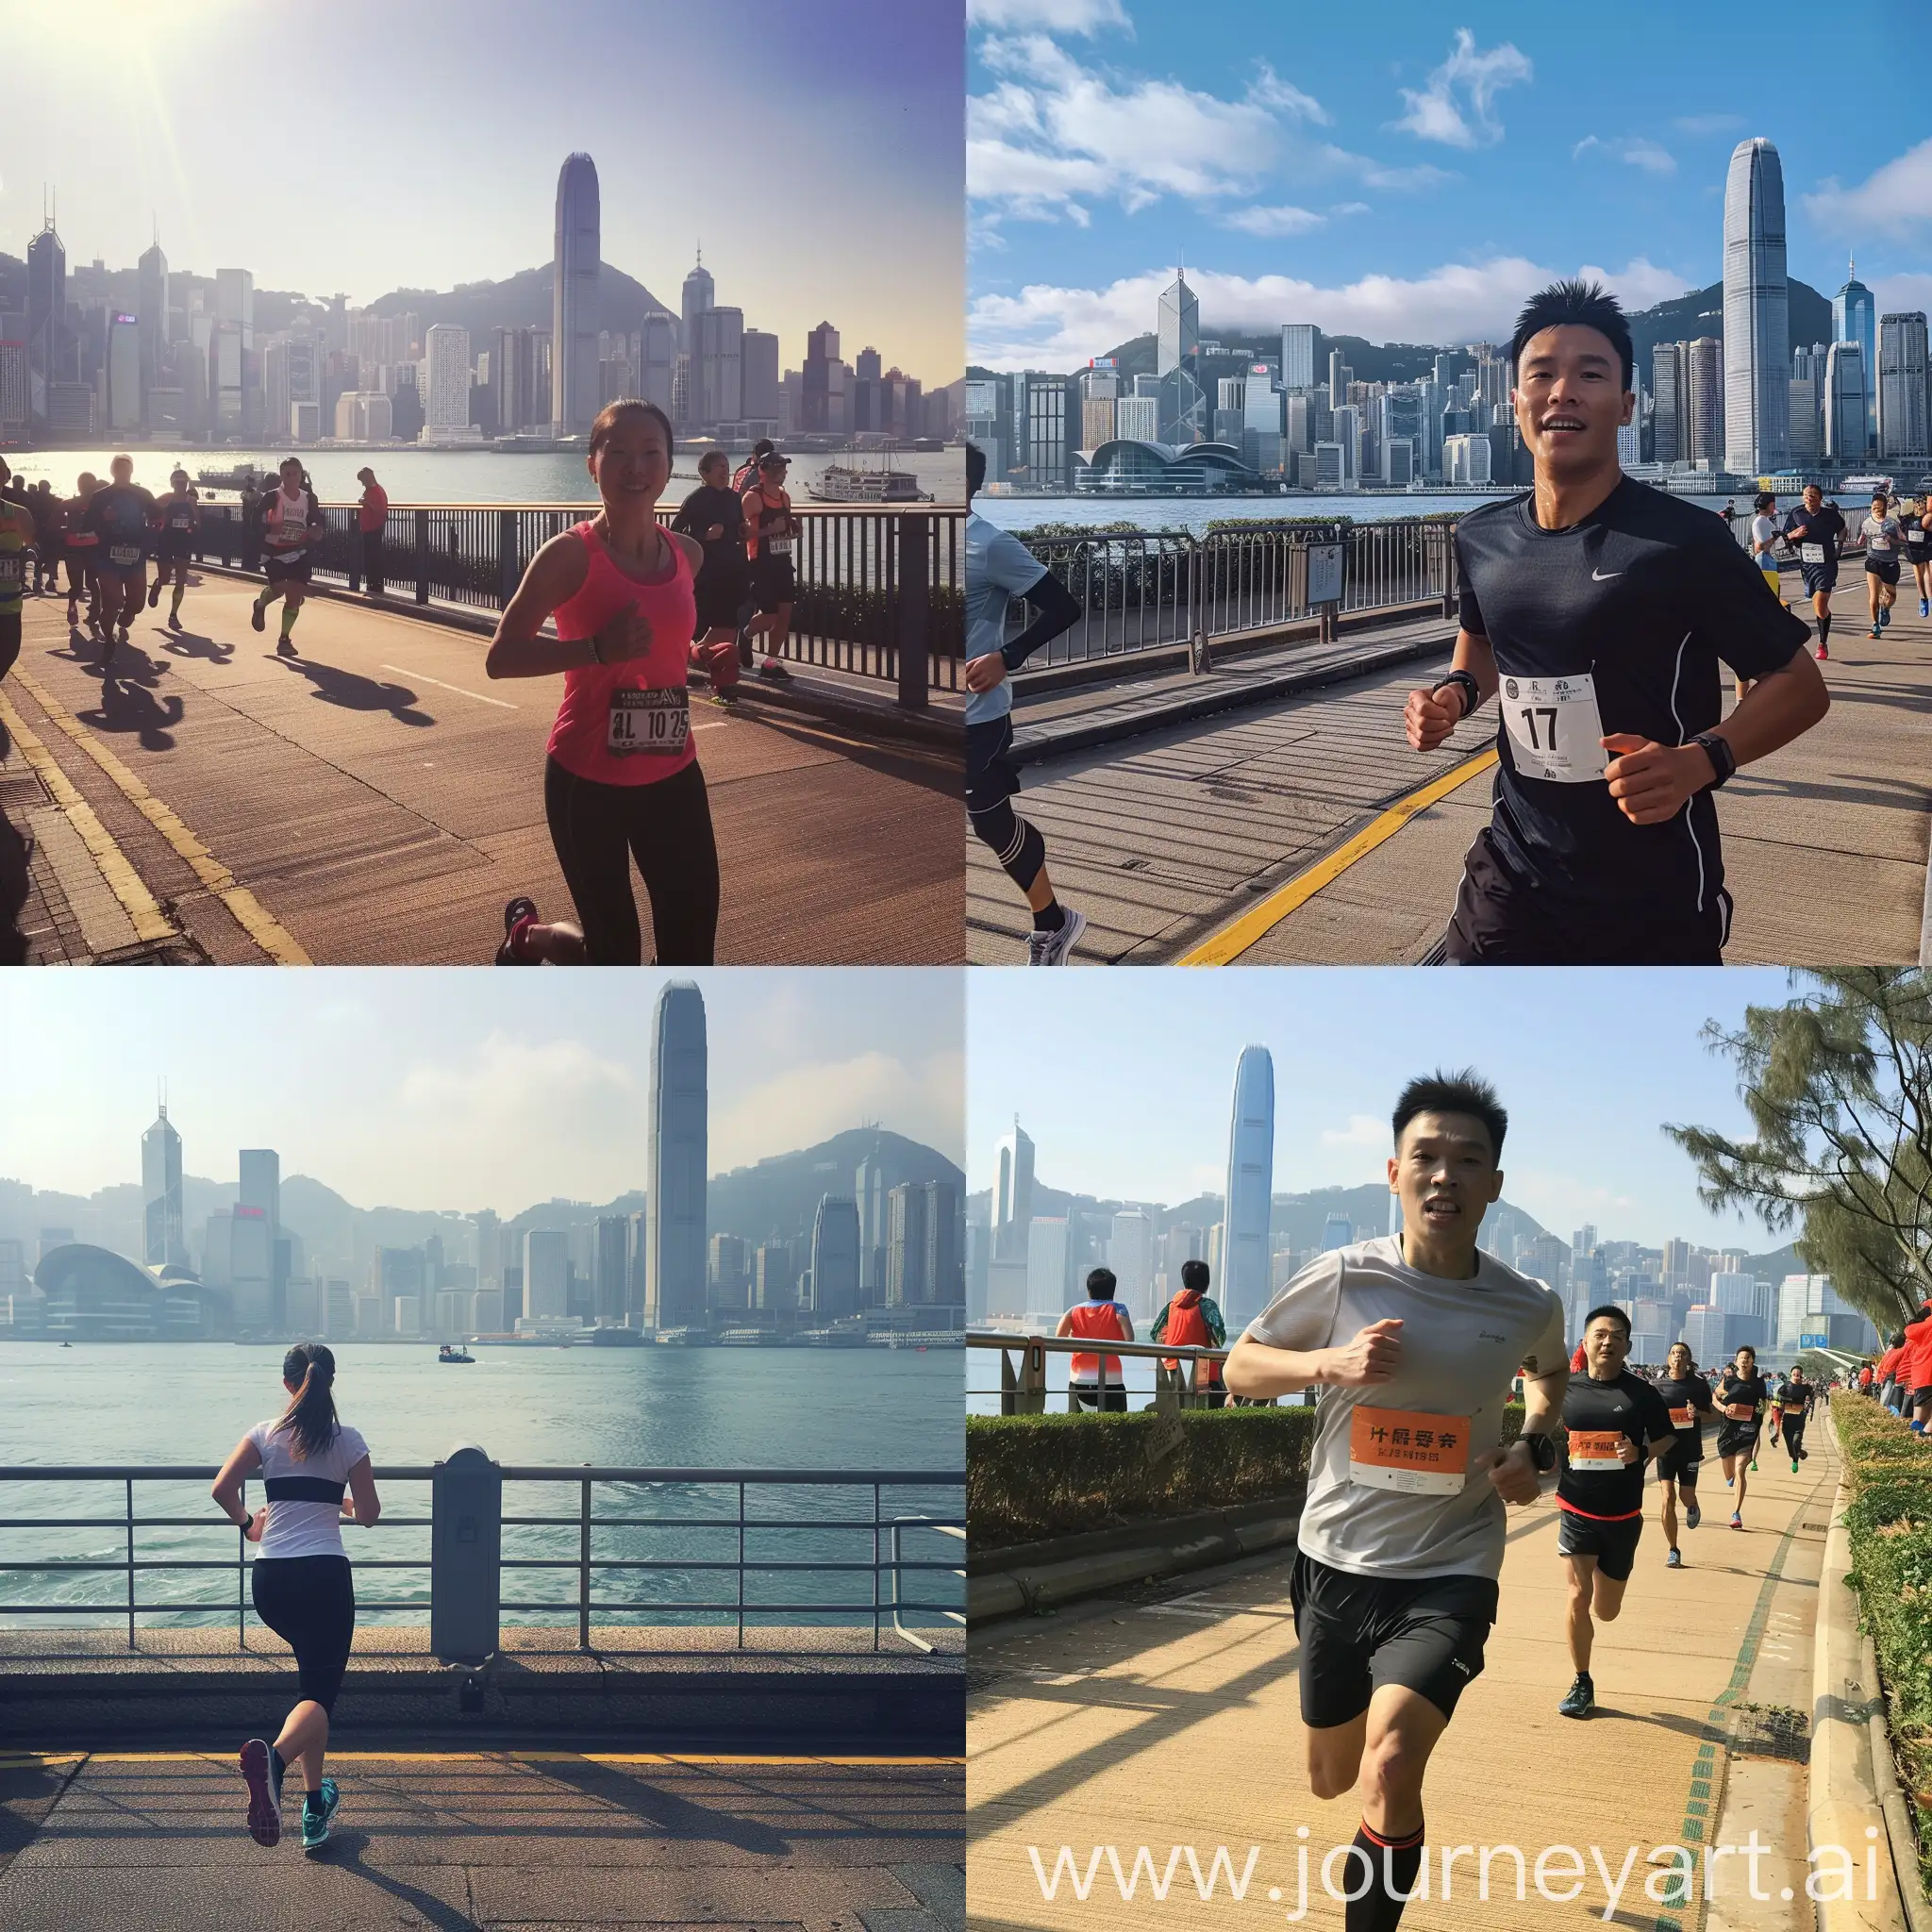 I am going to have 10km run at Hongkong Victoria bay